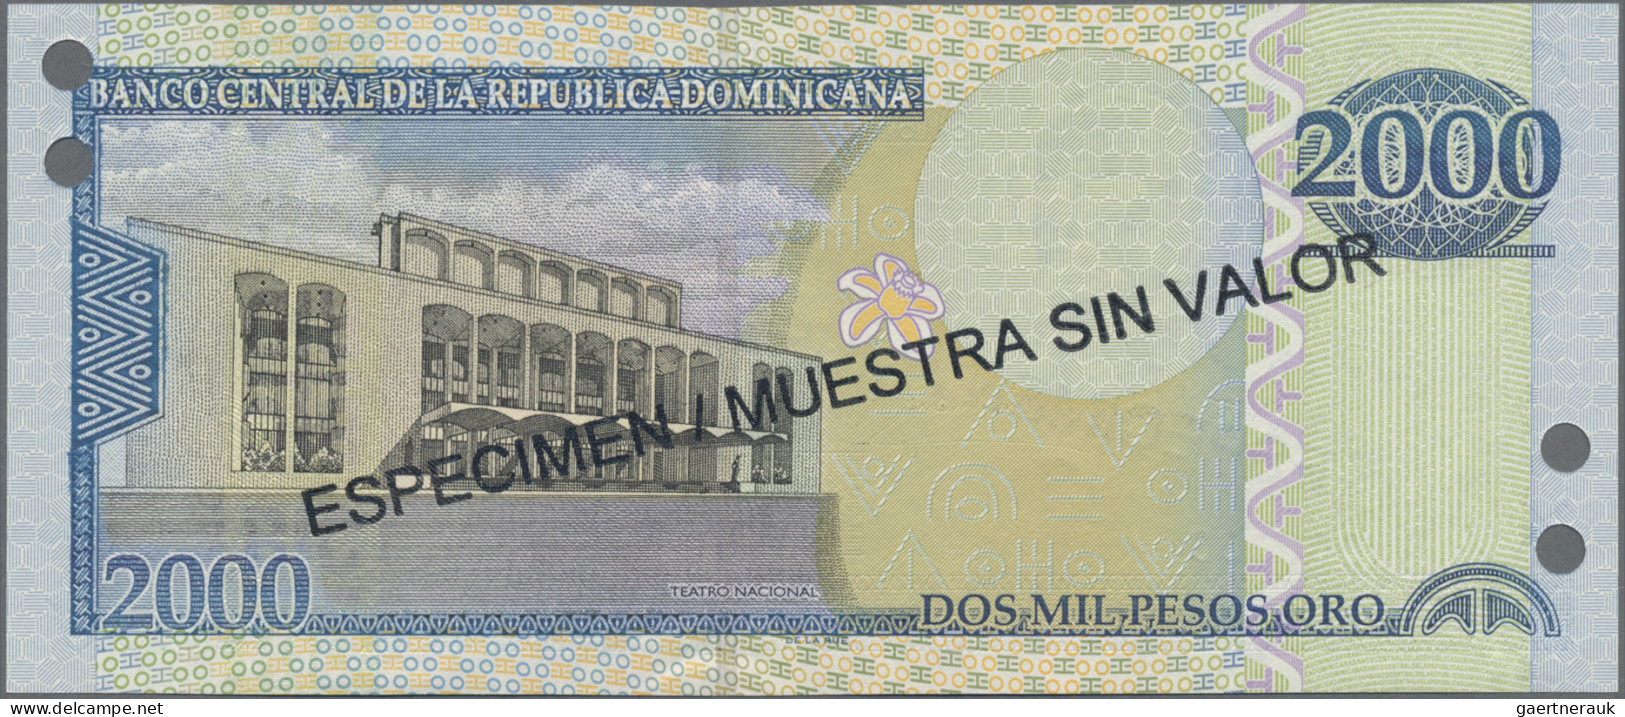 Dominican Republic: Banco Central de la República Dominicana, huge lot with 33 S